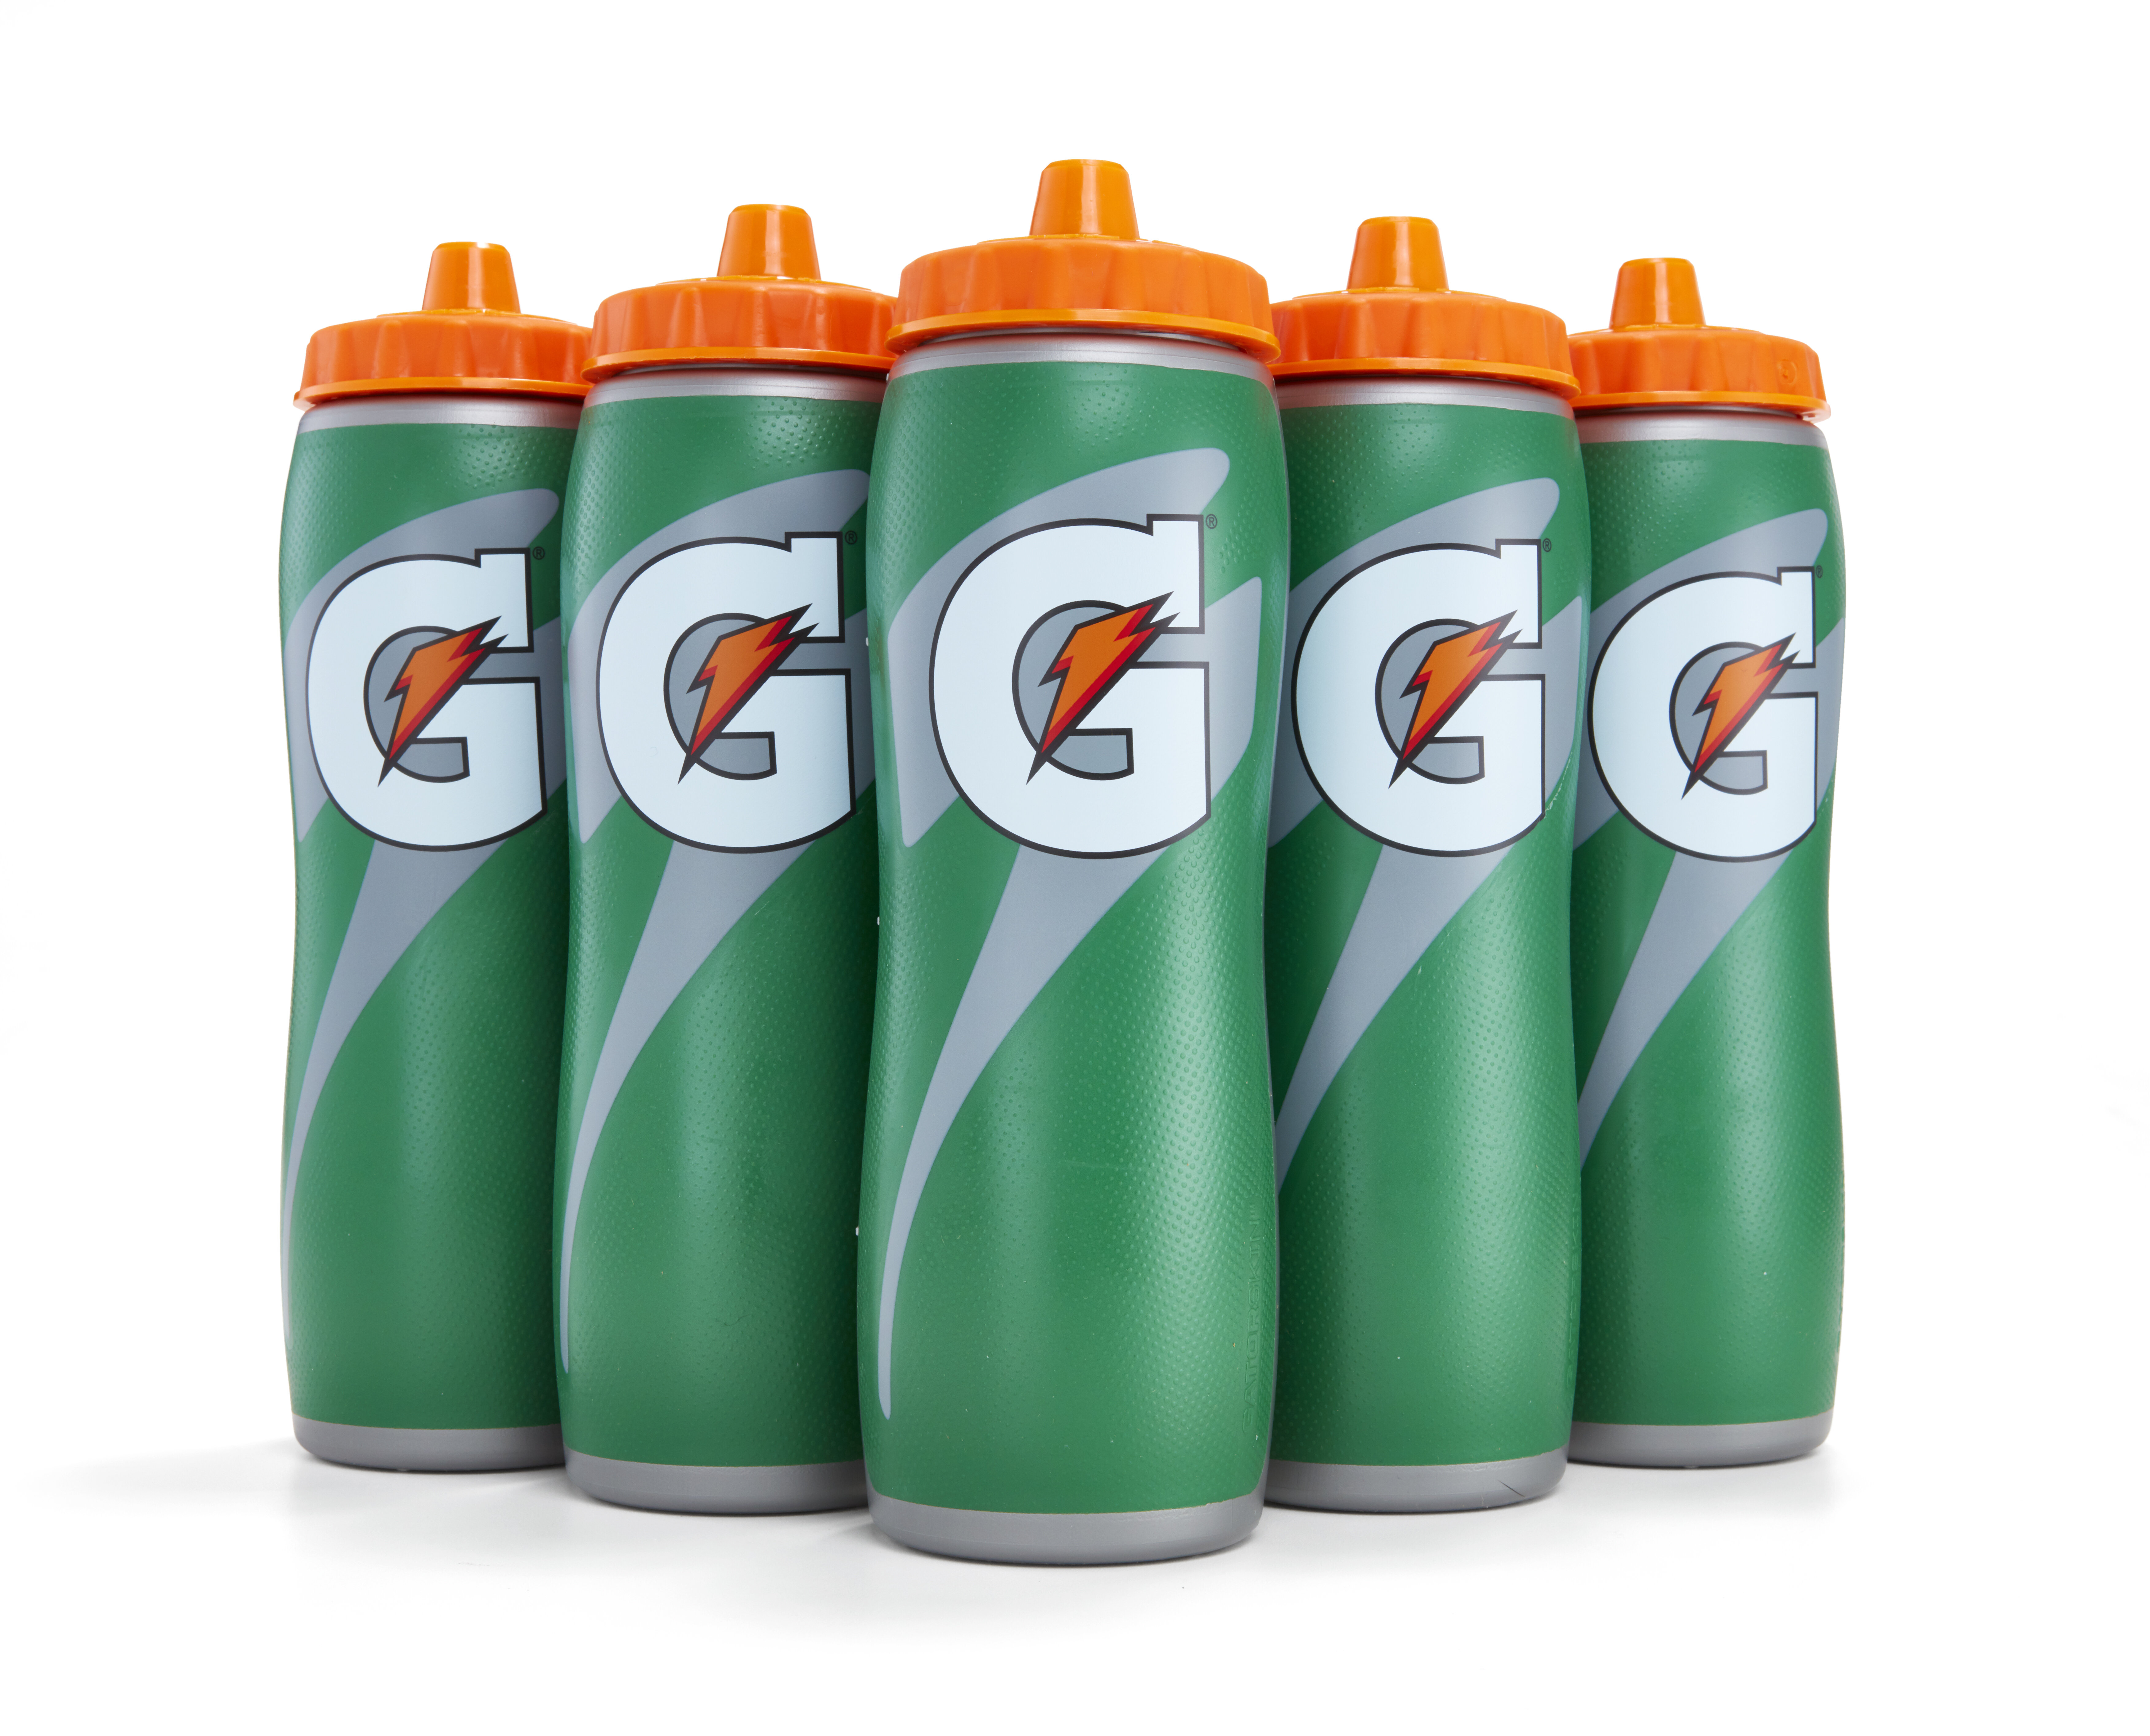 PERSONALIZED 20oz. Gatorade Sports Bottle Personalized Sports Water Bottle, Squeeze  Water Bottle, Green and Orange, Team Gift FREE SHIP 